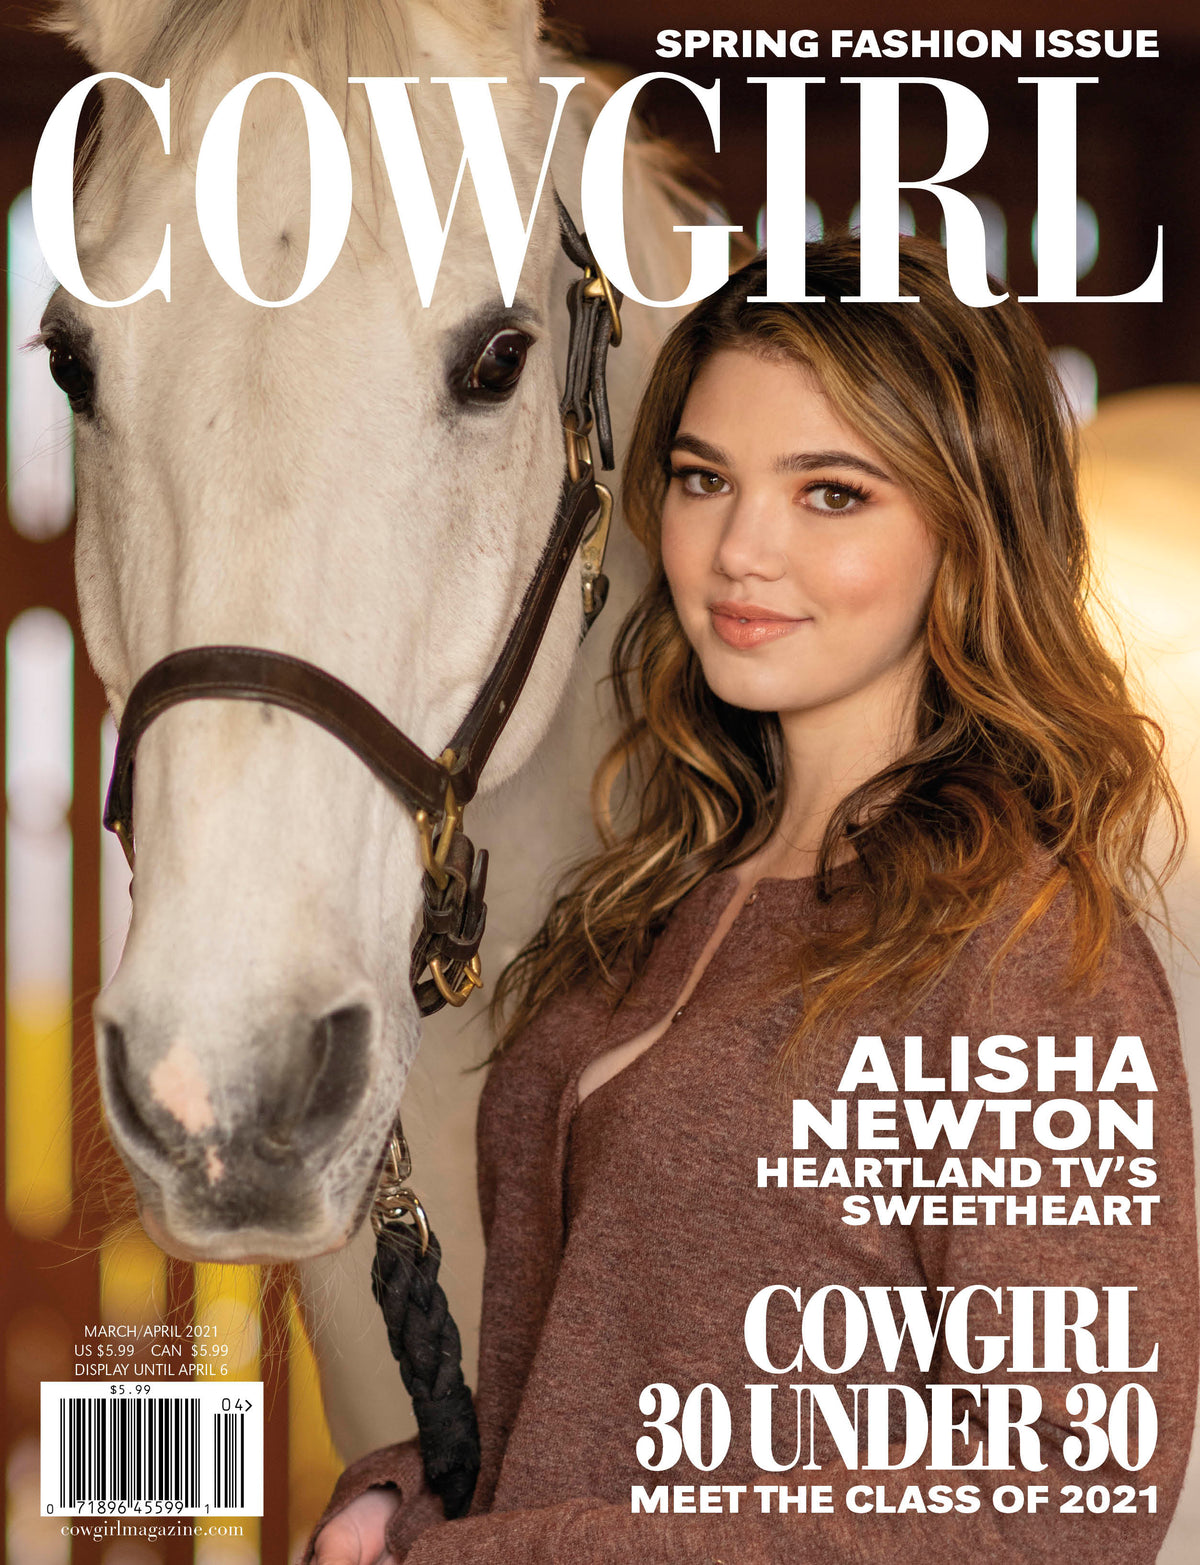 Cowgirl Magazine MarApr2021 - Heartland's Alisha Newton